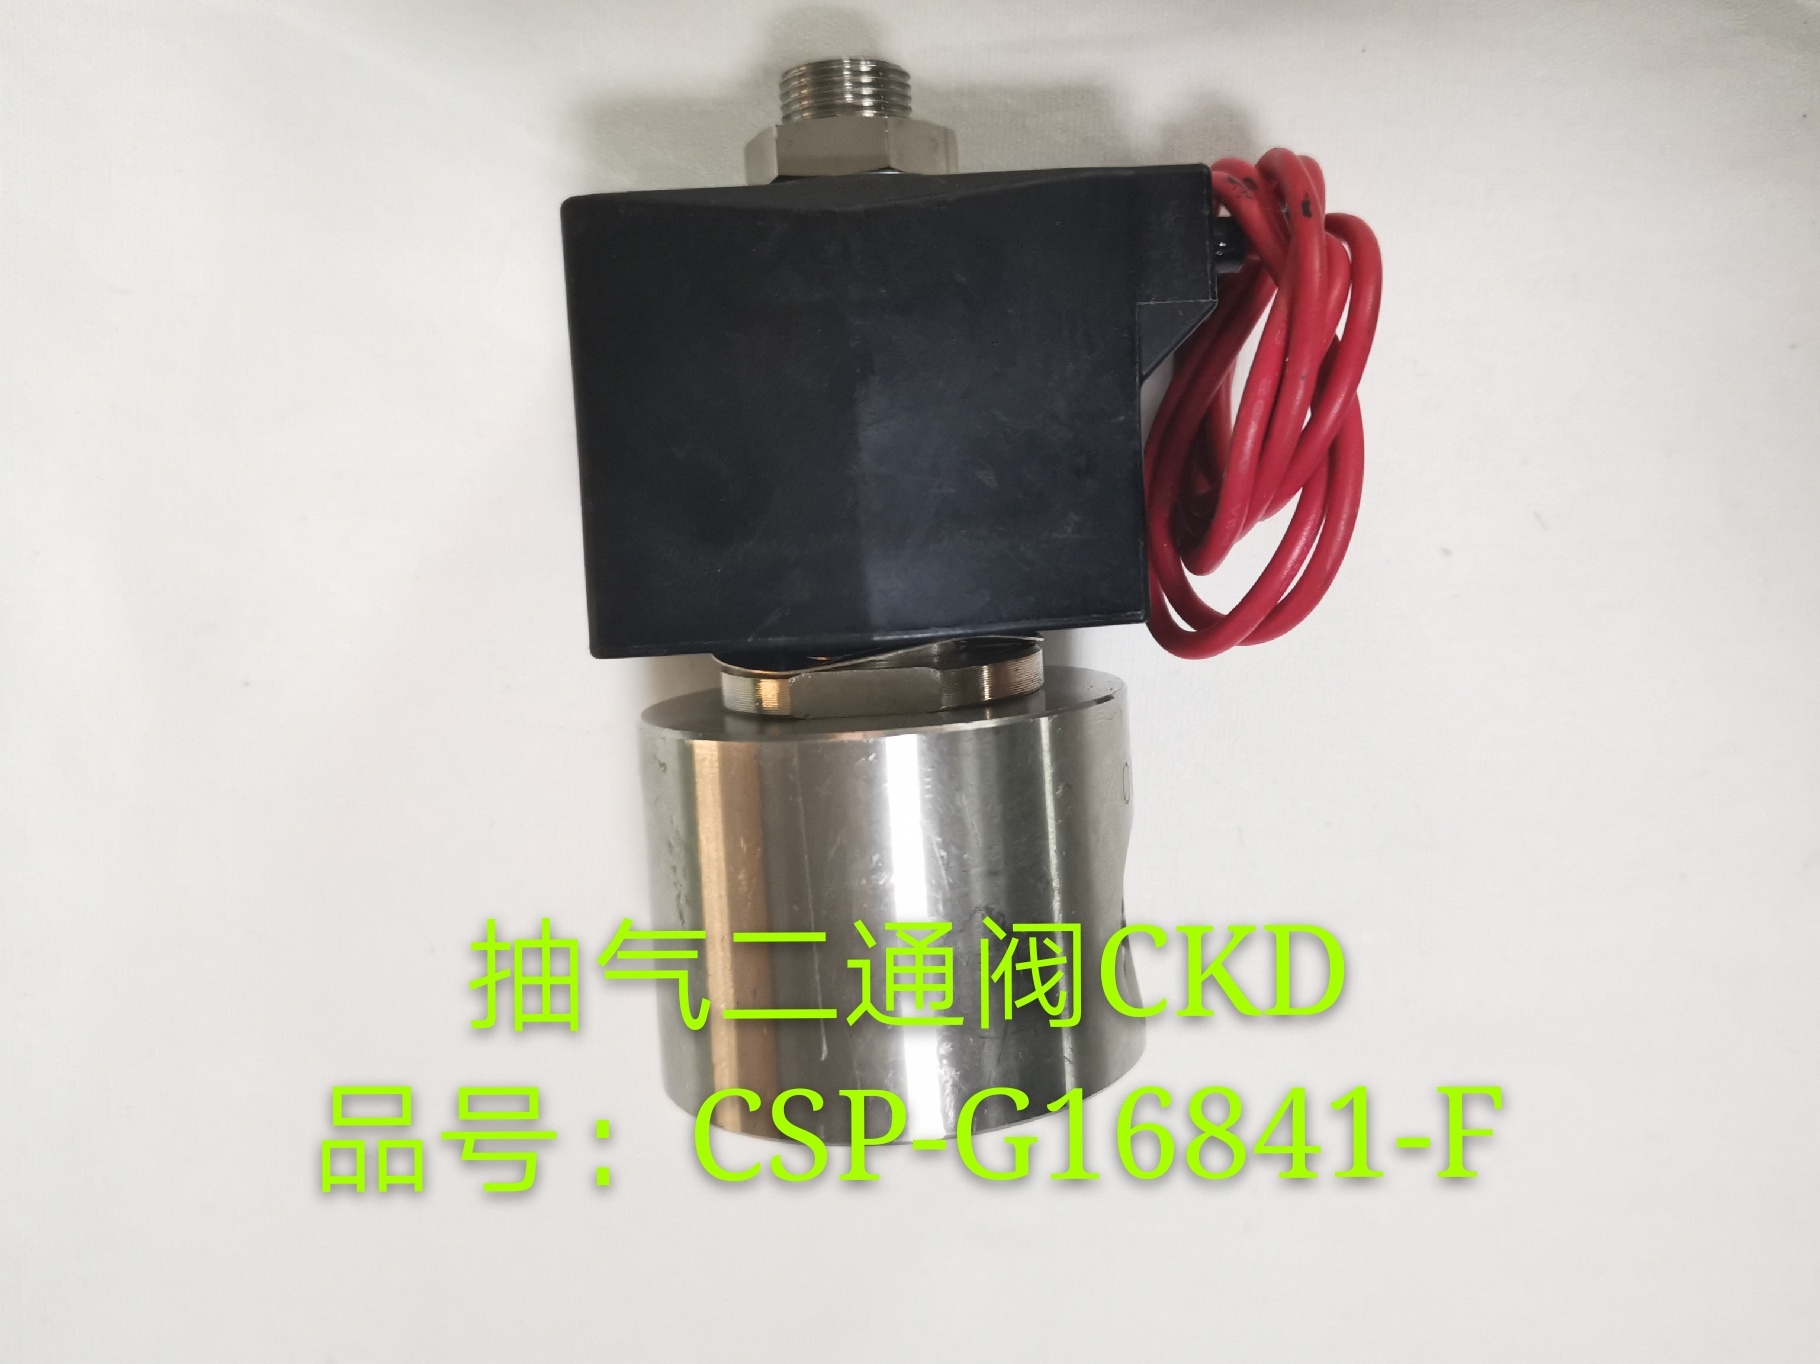 抽氣二通閥CKD 品號: CSP-G16841-F